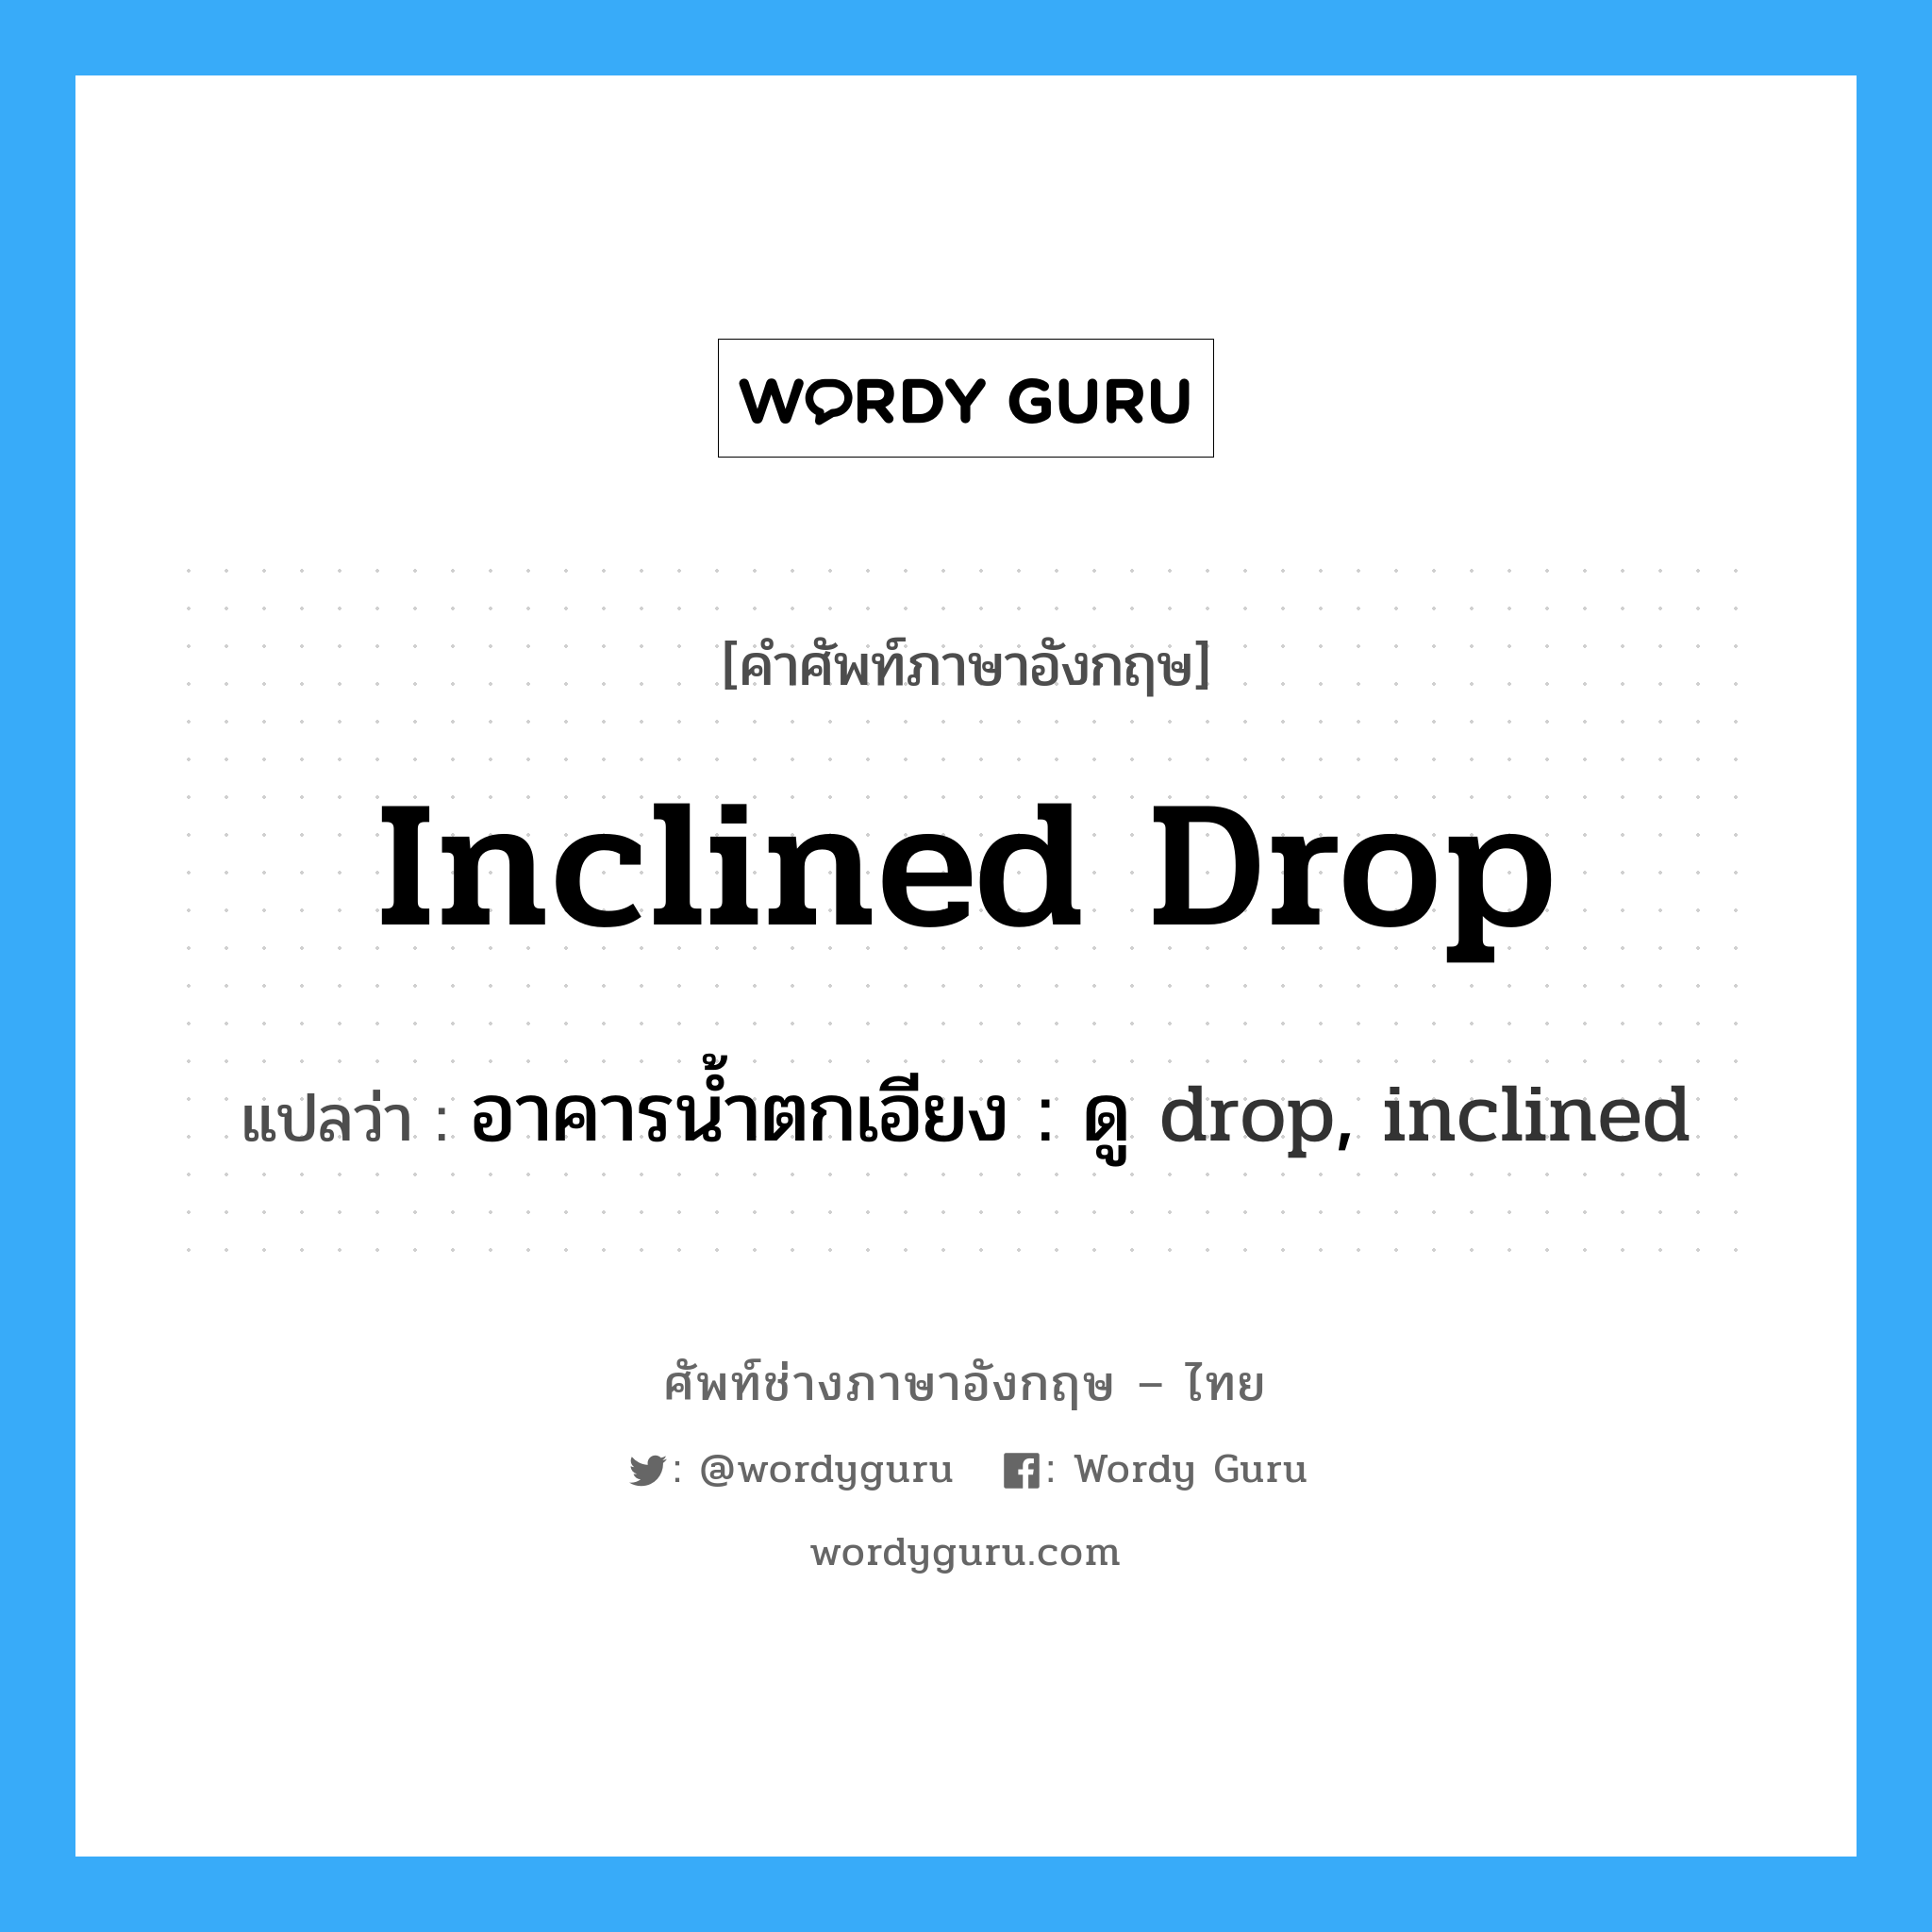 อาคารน้ำตกเอียง : ดู drop, inclined ภาษาอังกฤษ?, คำศัพท์ช่างภาษาอังกฤษ - ไทย อาคารน้ำตกเอียง : ดู drop, inclined คำศัพท์ภาษาอังกฤษ อาคารน้ำตกเอียง : ดู drop, inclined แปลว่า inclined drop